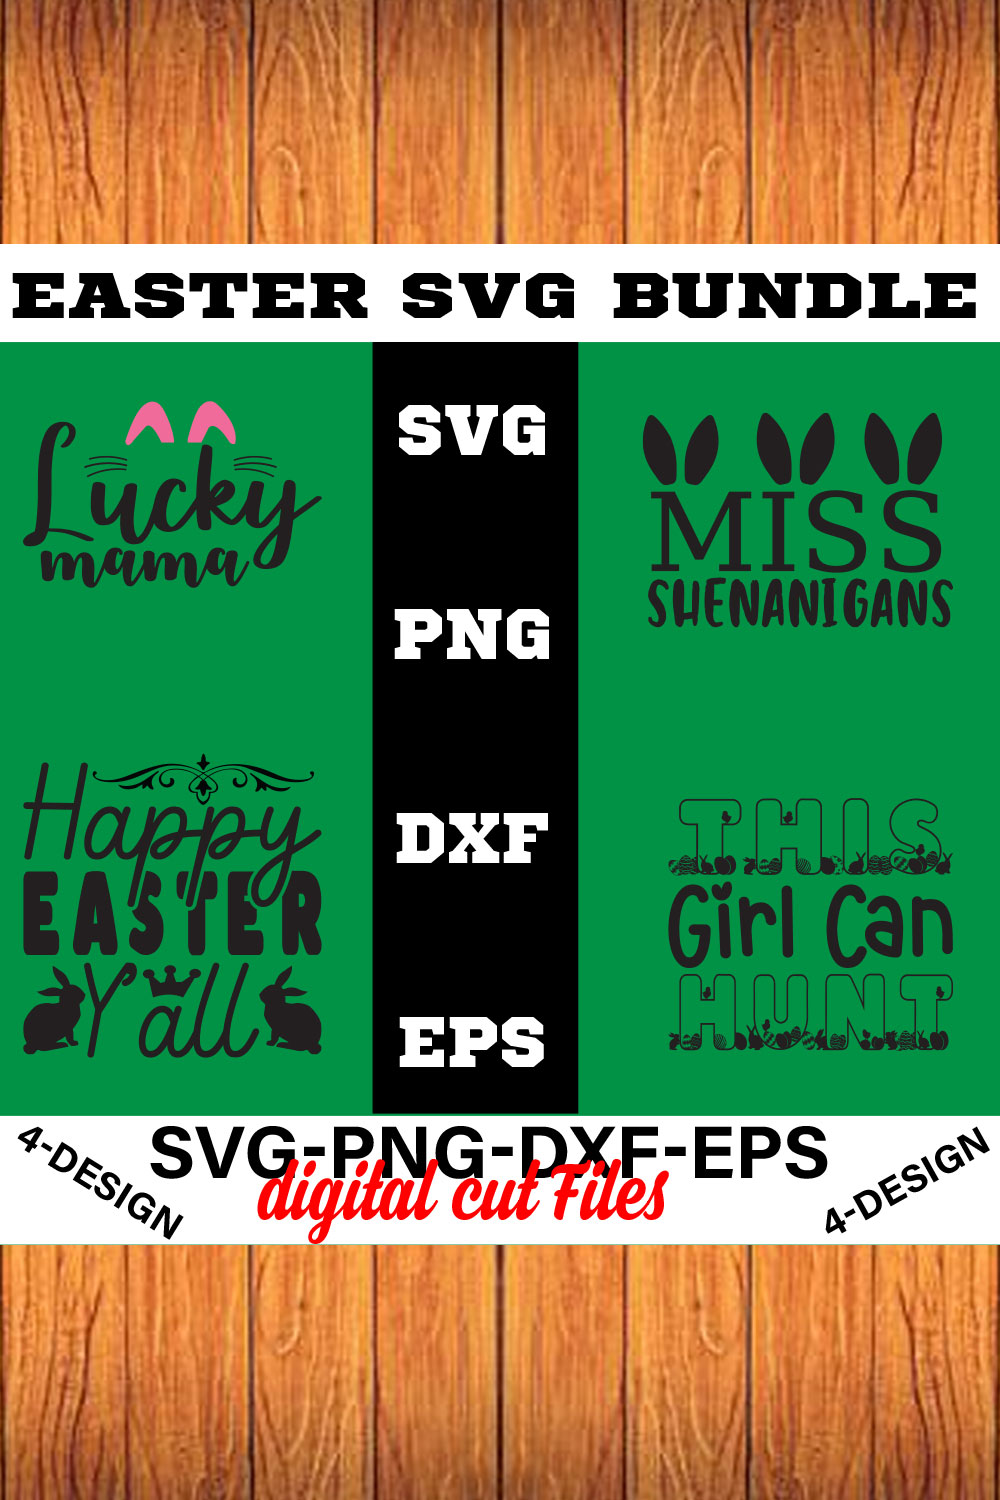 Happy Easter SVG Bundle, Easter SVG, Easter quotes, Easter Bunny svg, Easter Egg svg, Volume-03 pinterest preview image.